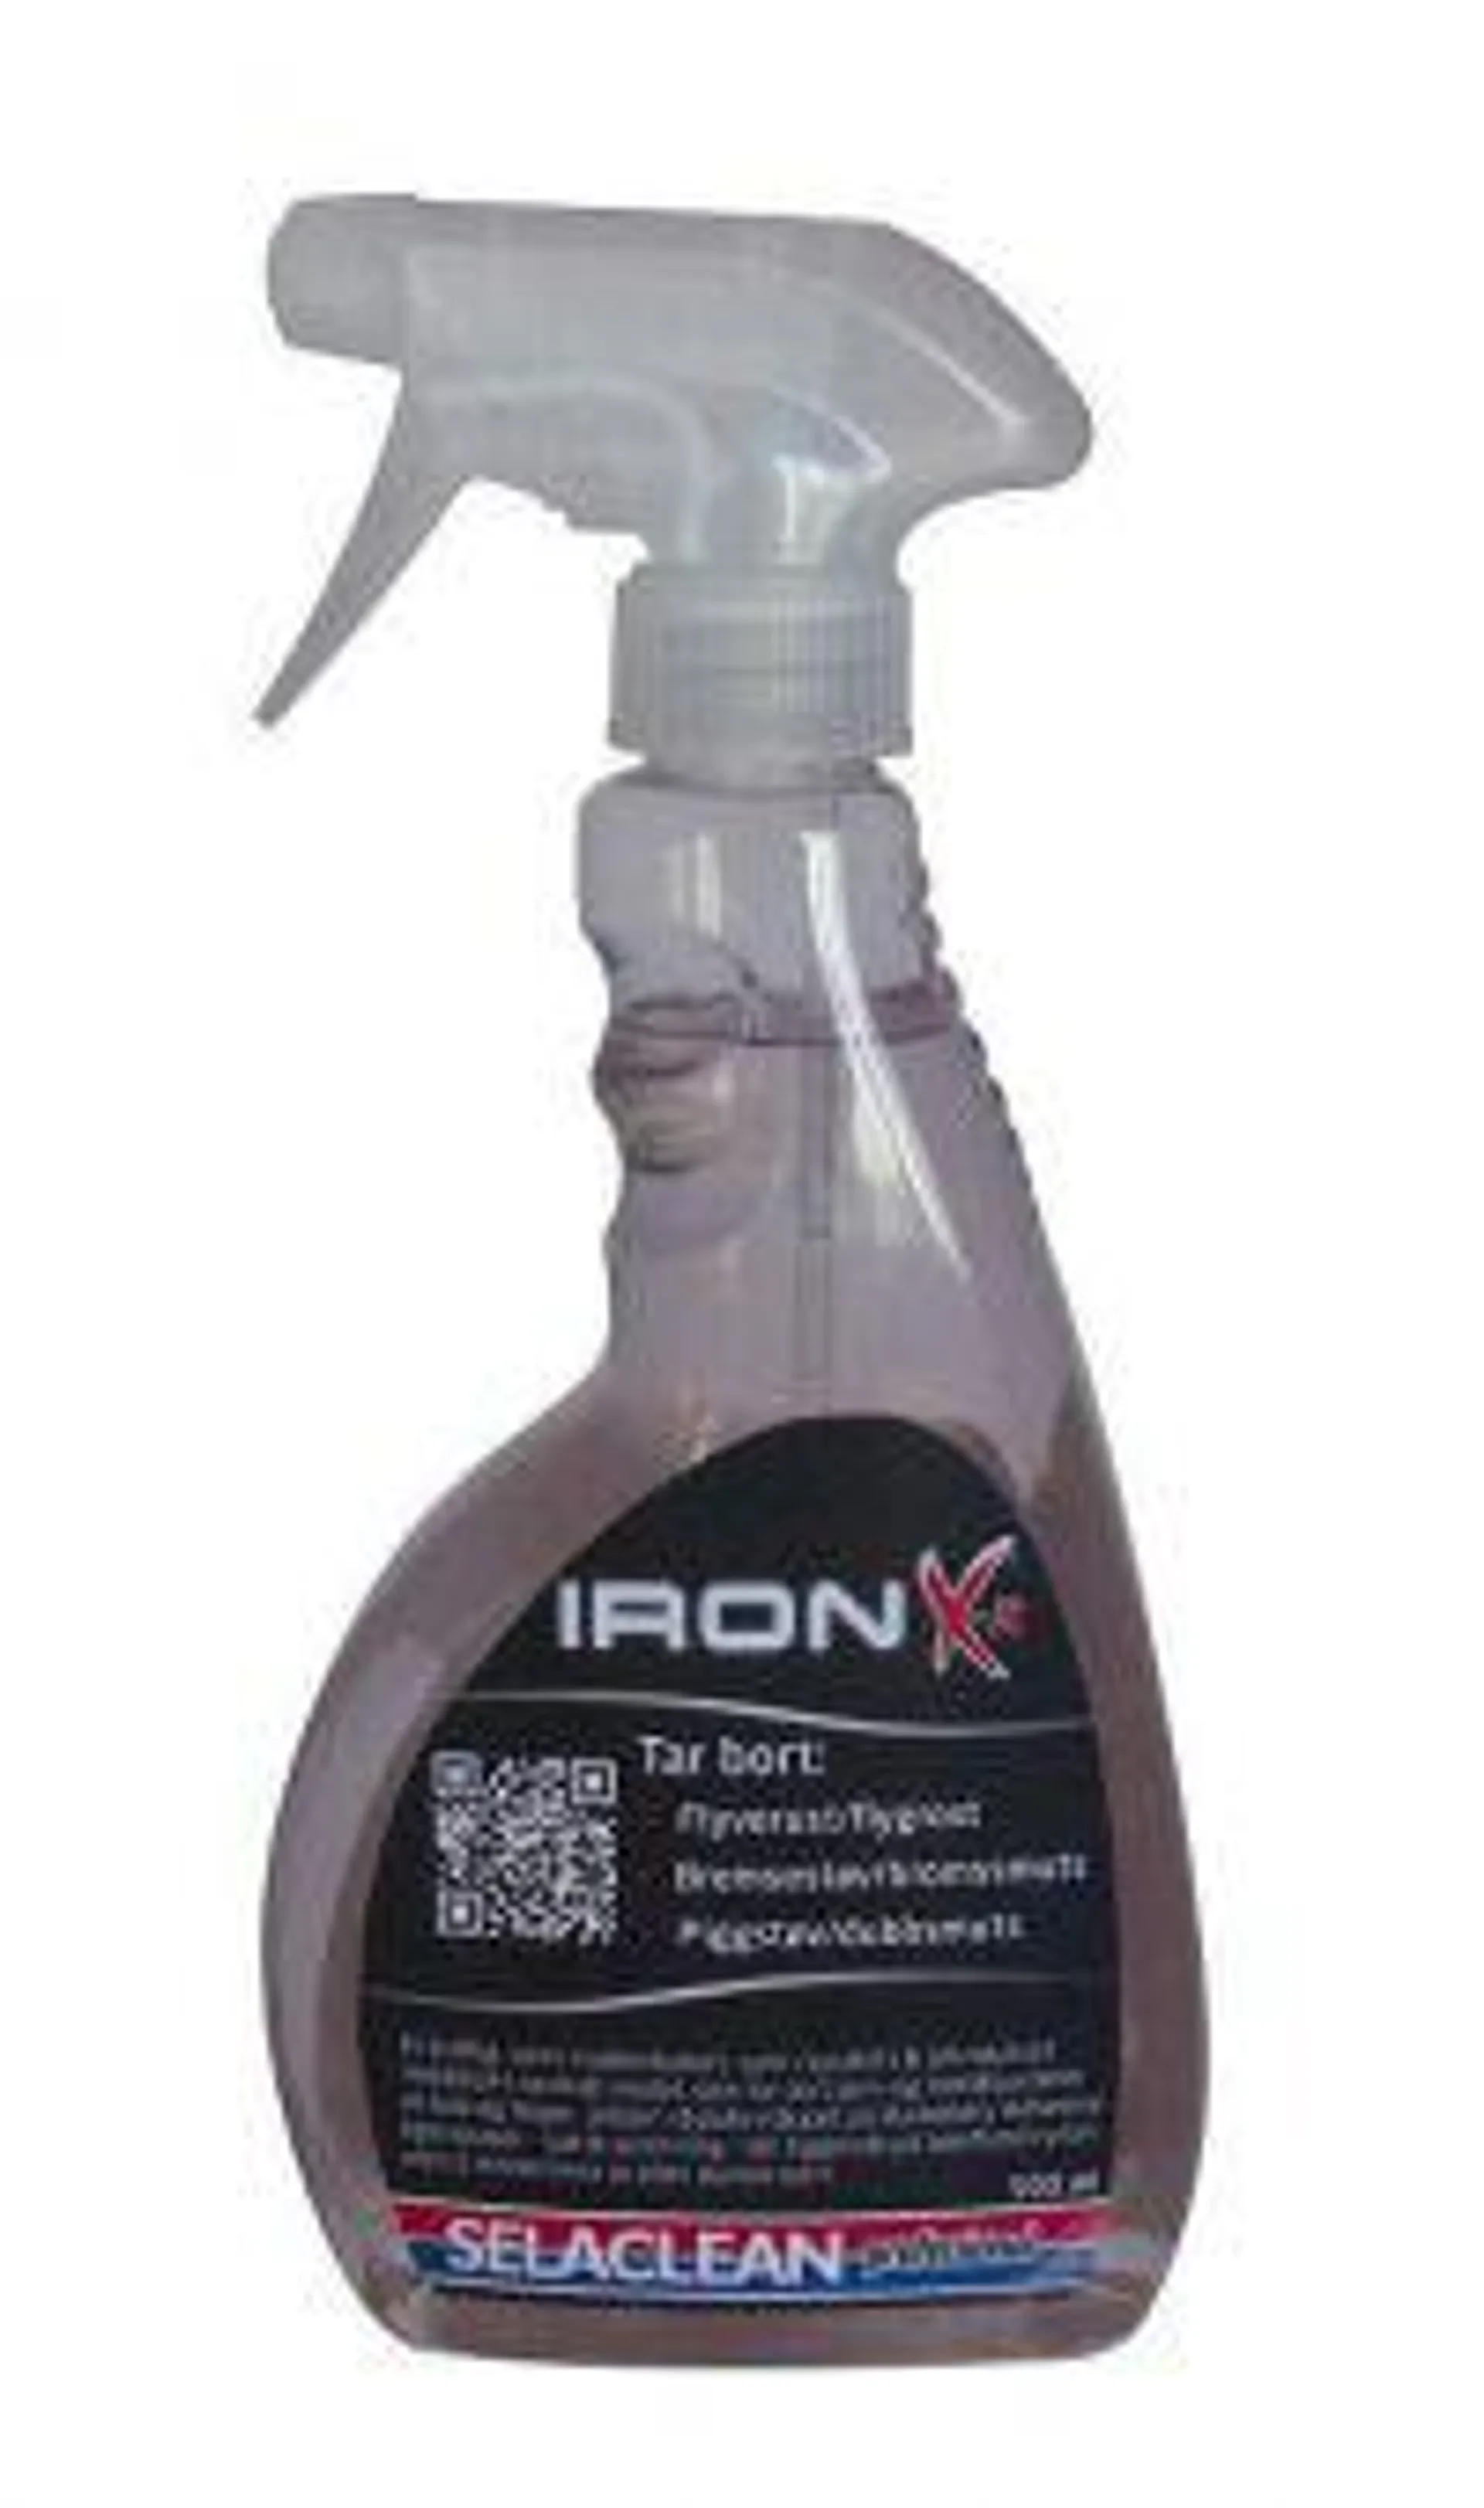 Selaclean Iron X-it - Flygrostlösare 500 ml